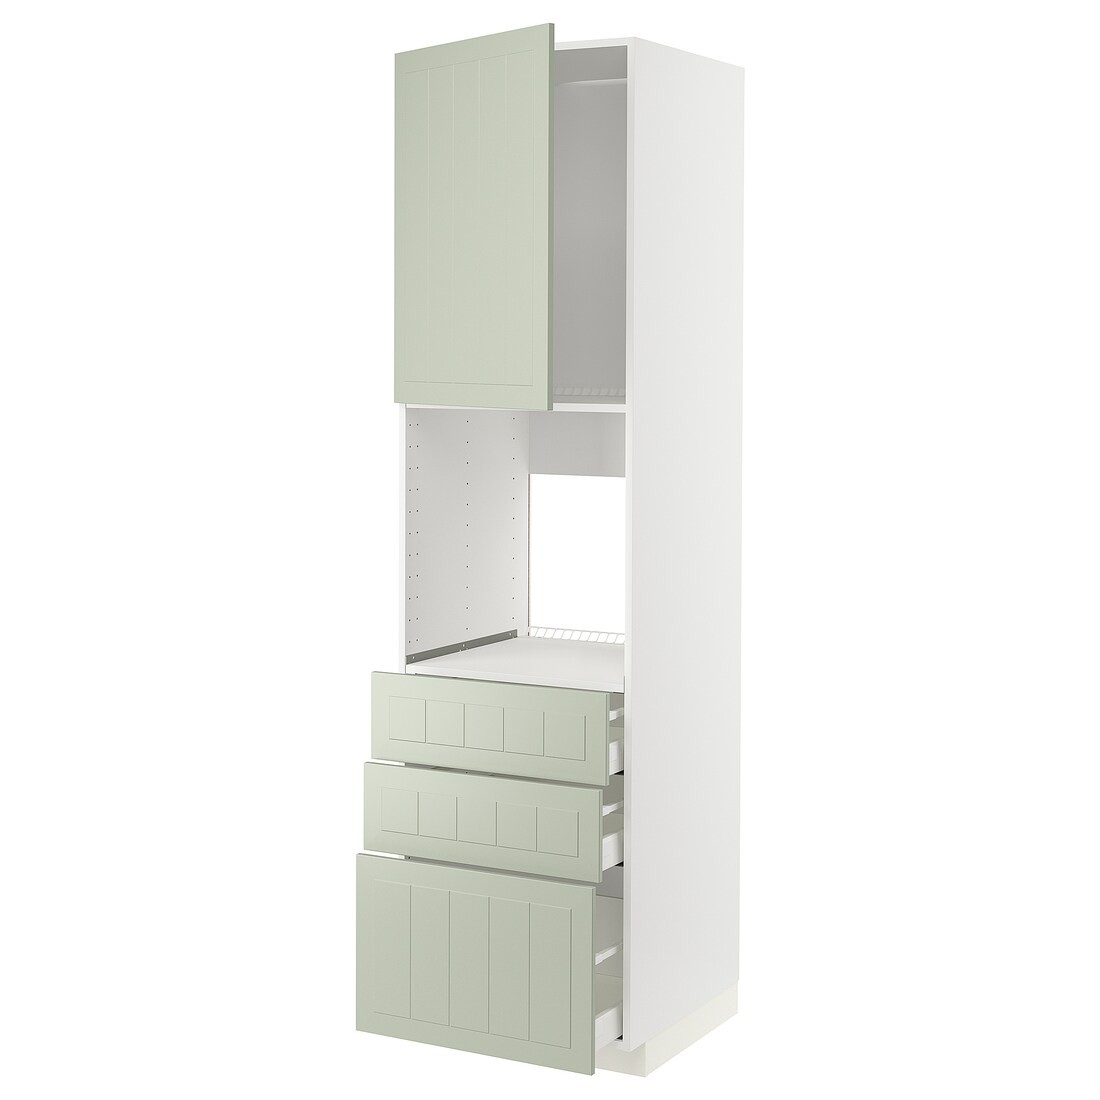 METOD МЕТОД / MAXIMERA МАКСИМЕРА Высокий шкаф для духовки, белый / Stensund светло-зеленый, 60x60x220 см